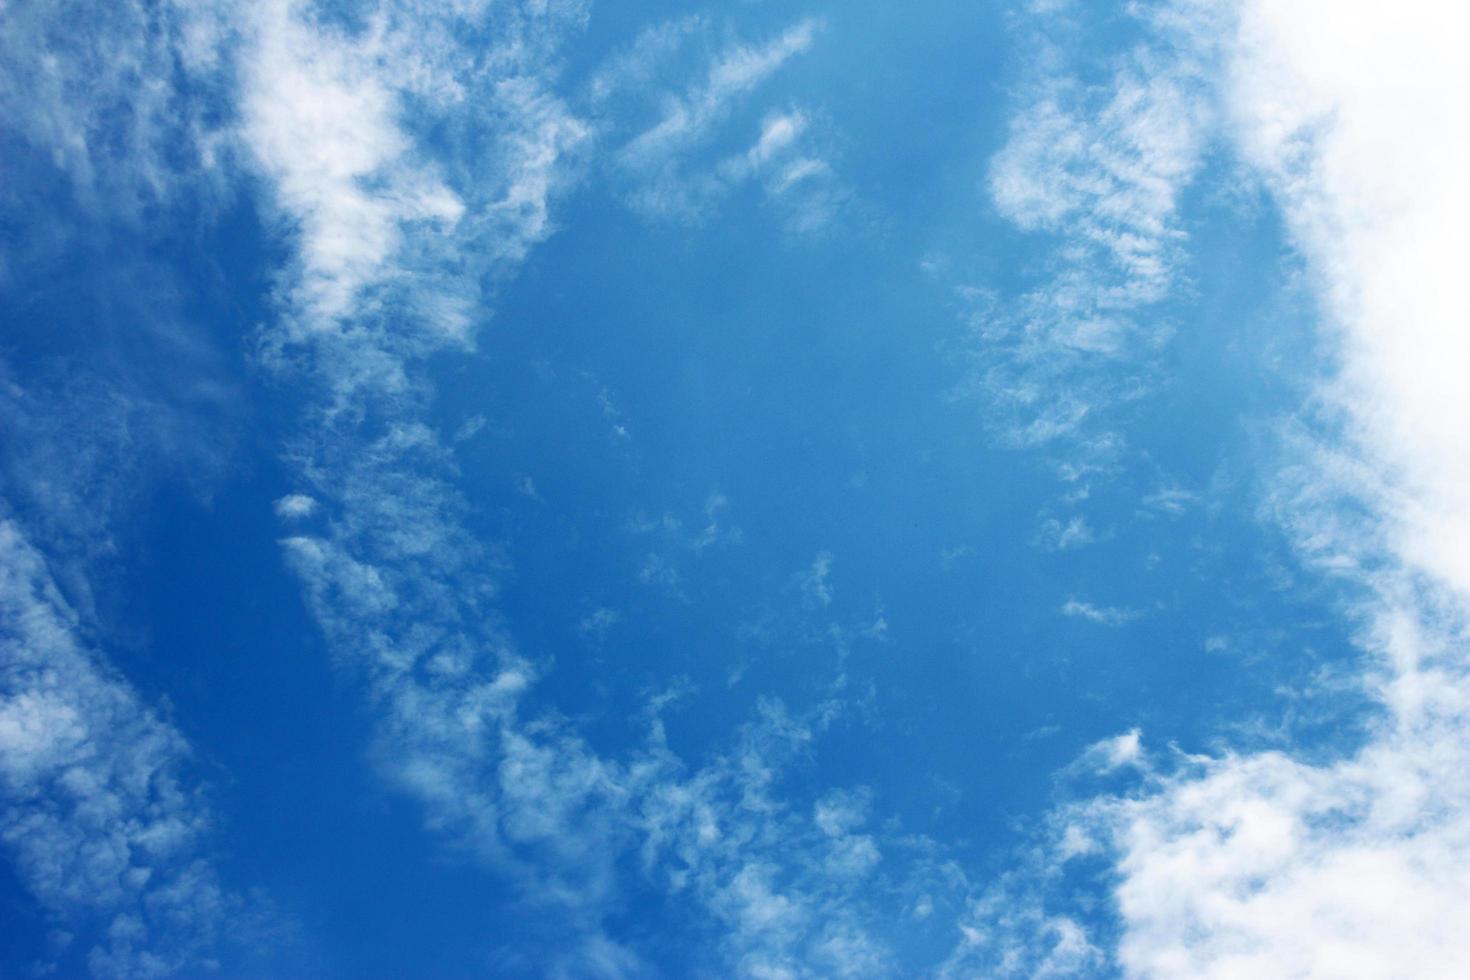 blauer Himmel und Wolken foto